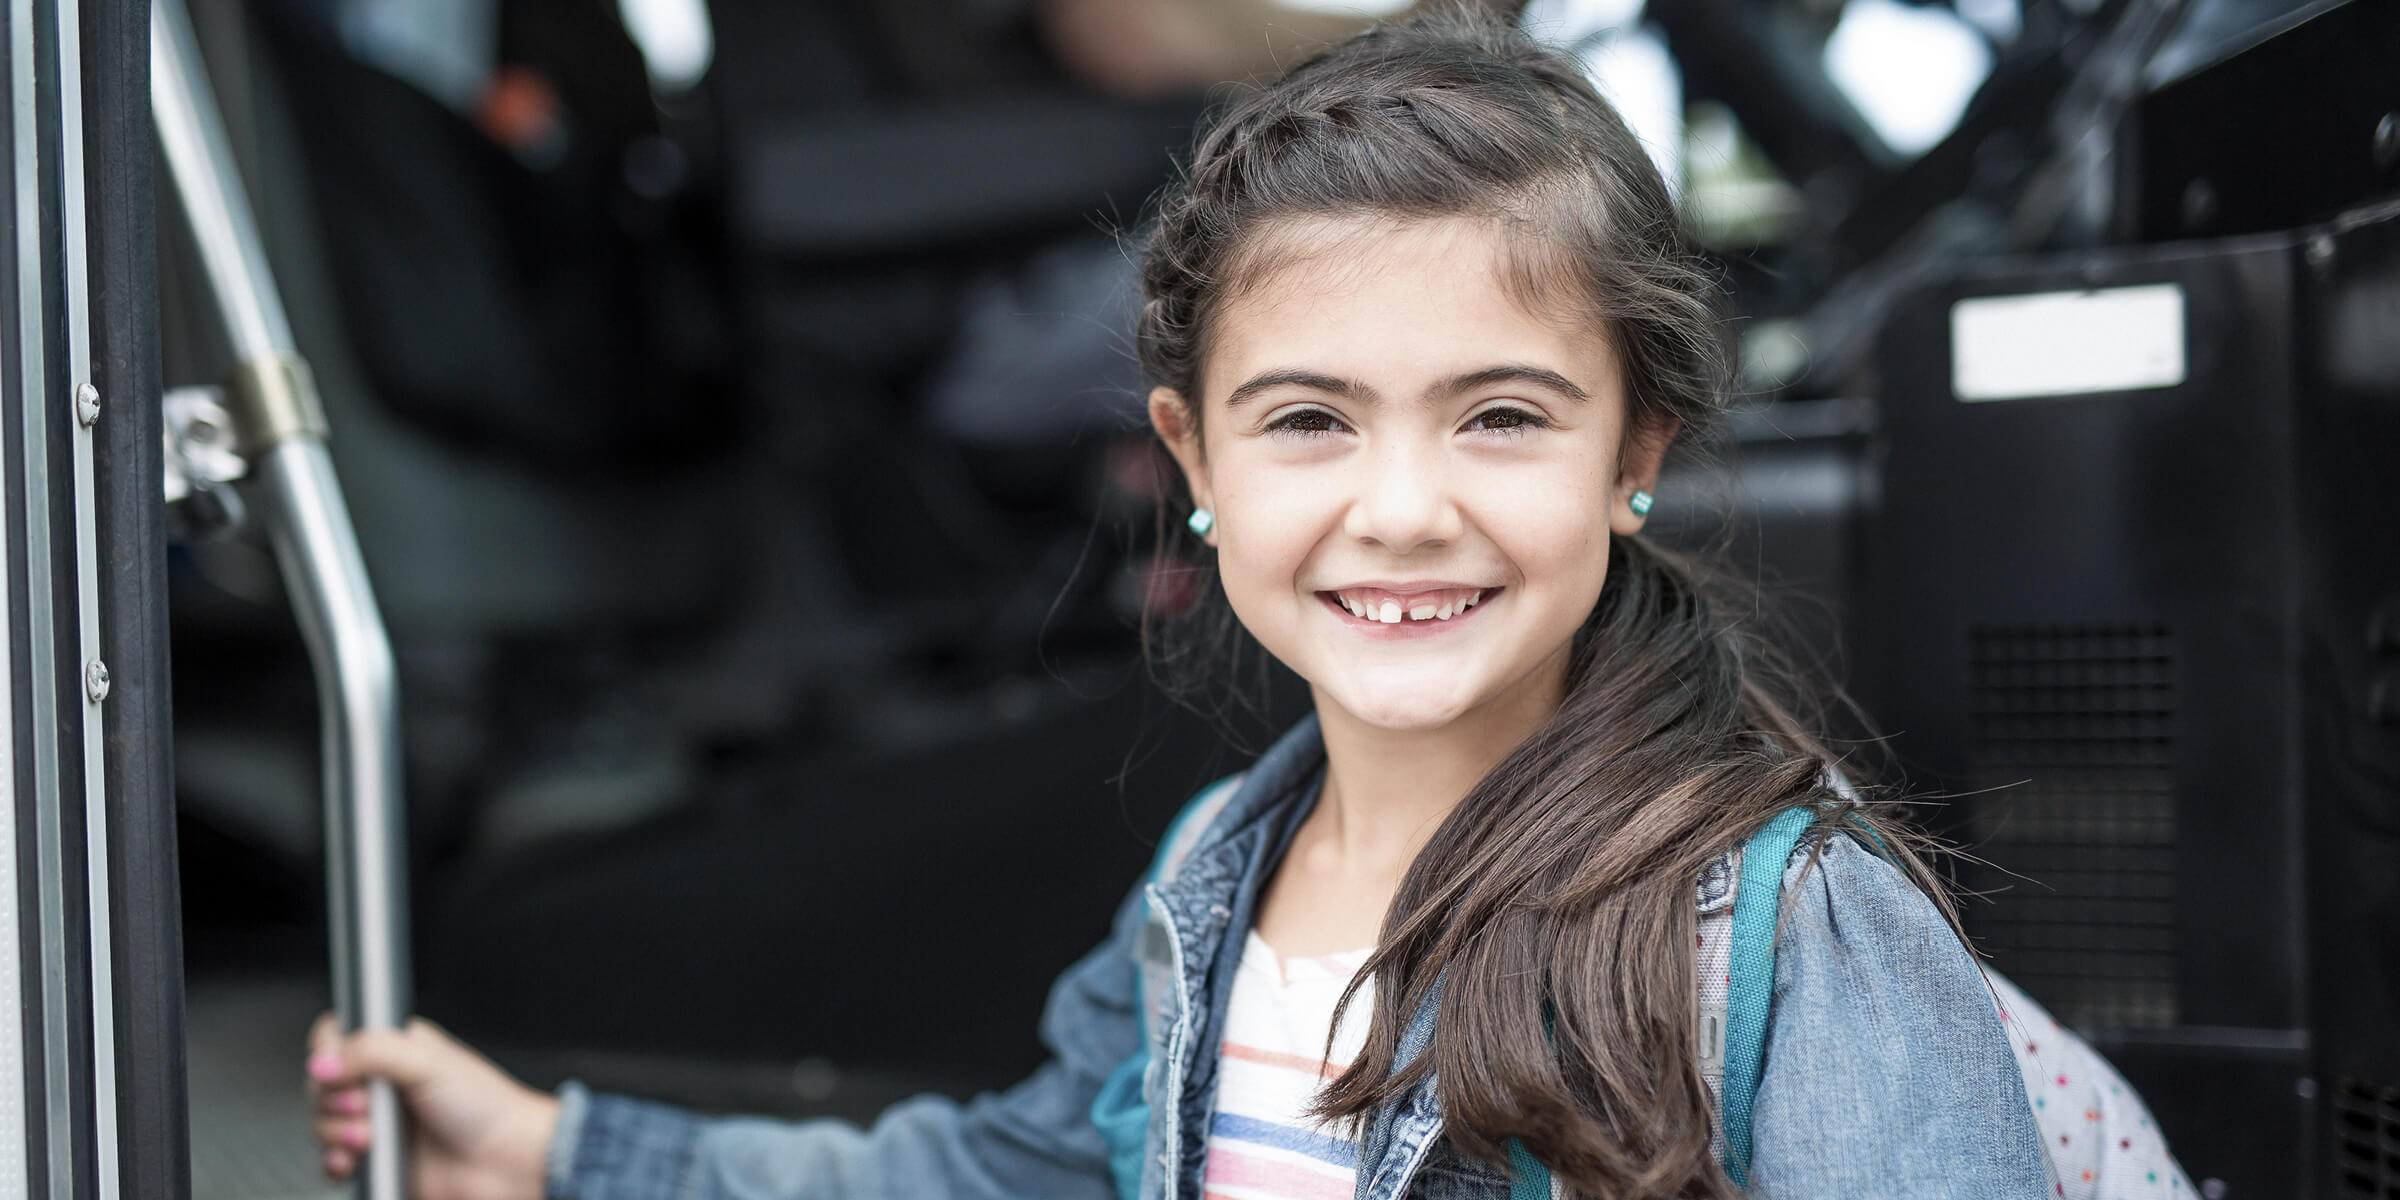 Bild zeigt lächelndes Mädchen im Buseinstieg